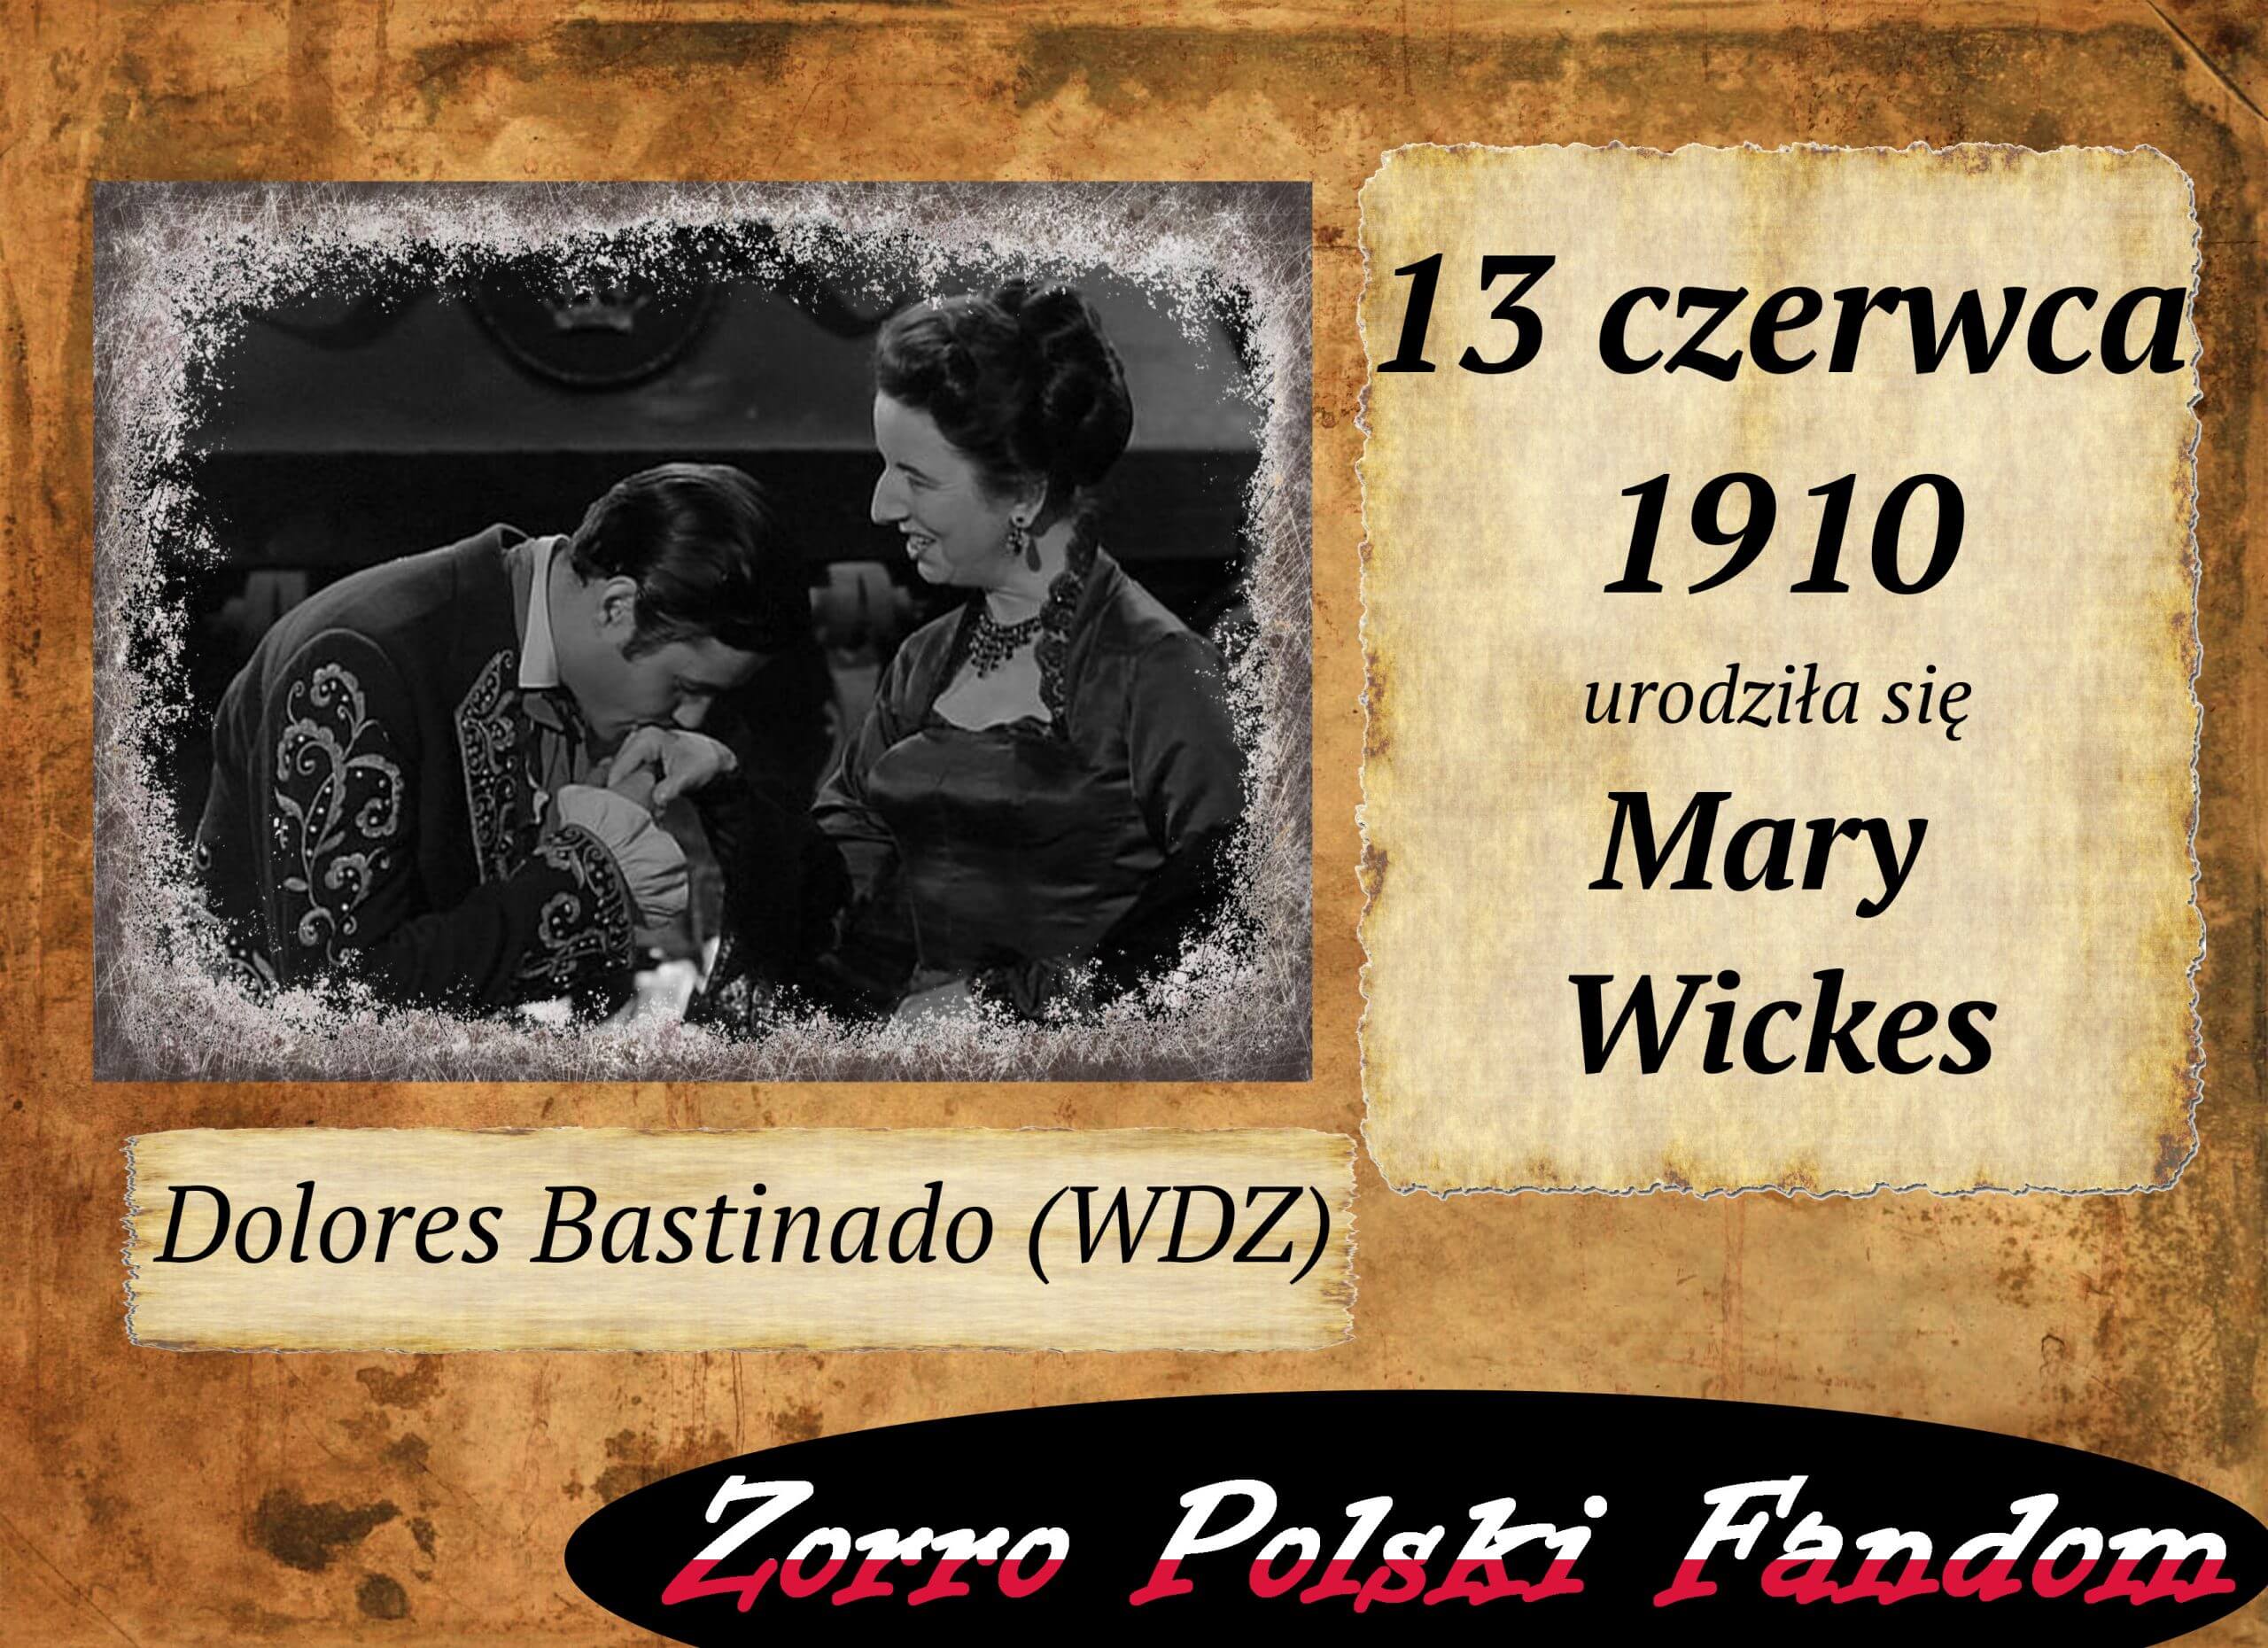 13 czerwca ur. Mary Wickes PL Dolores Bastinado Zorro